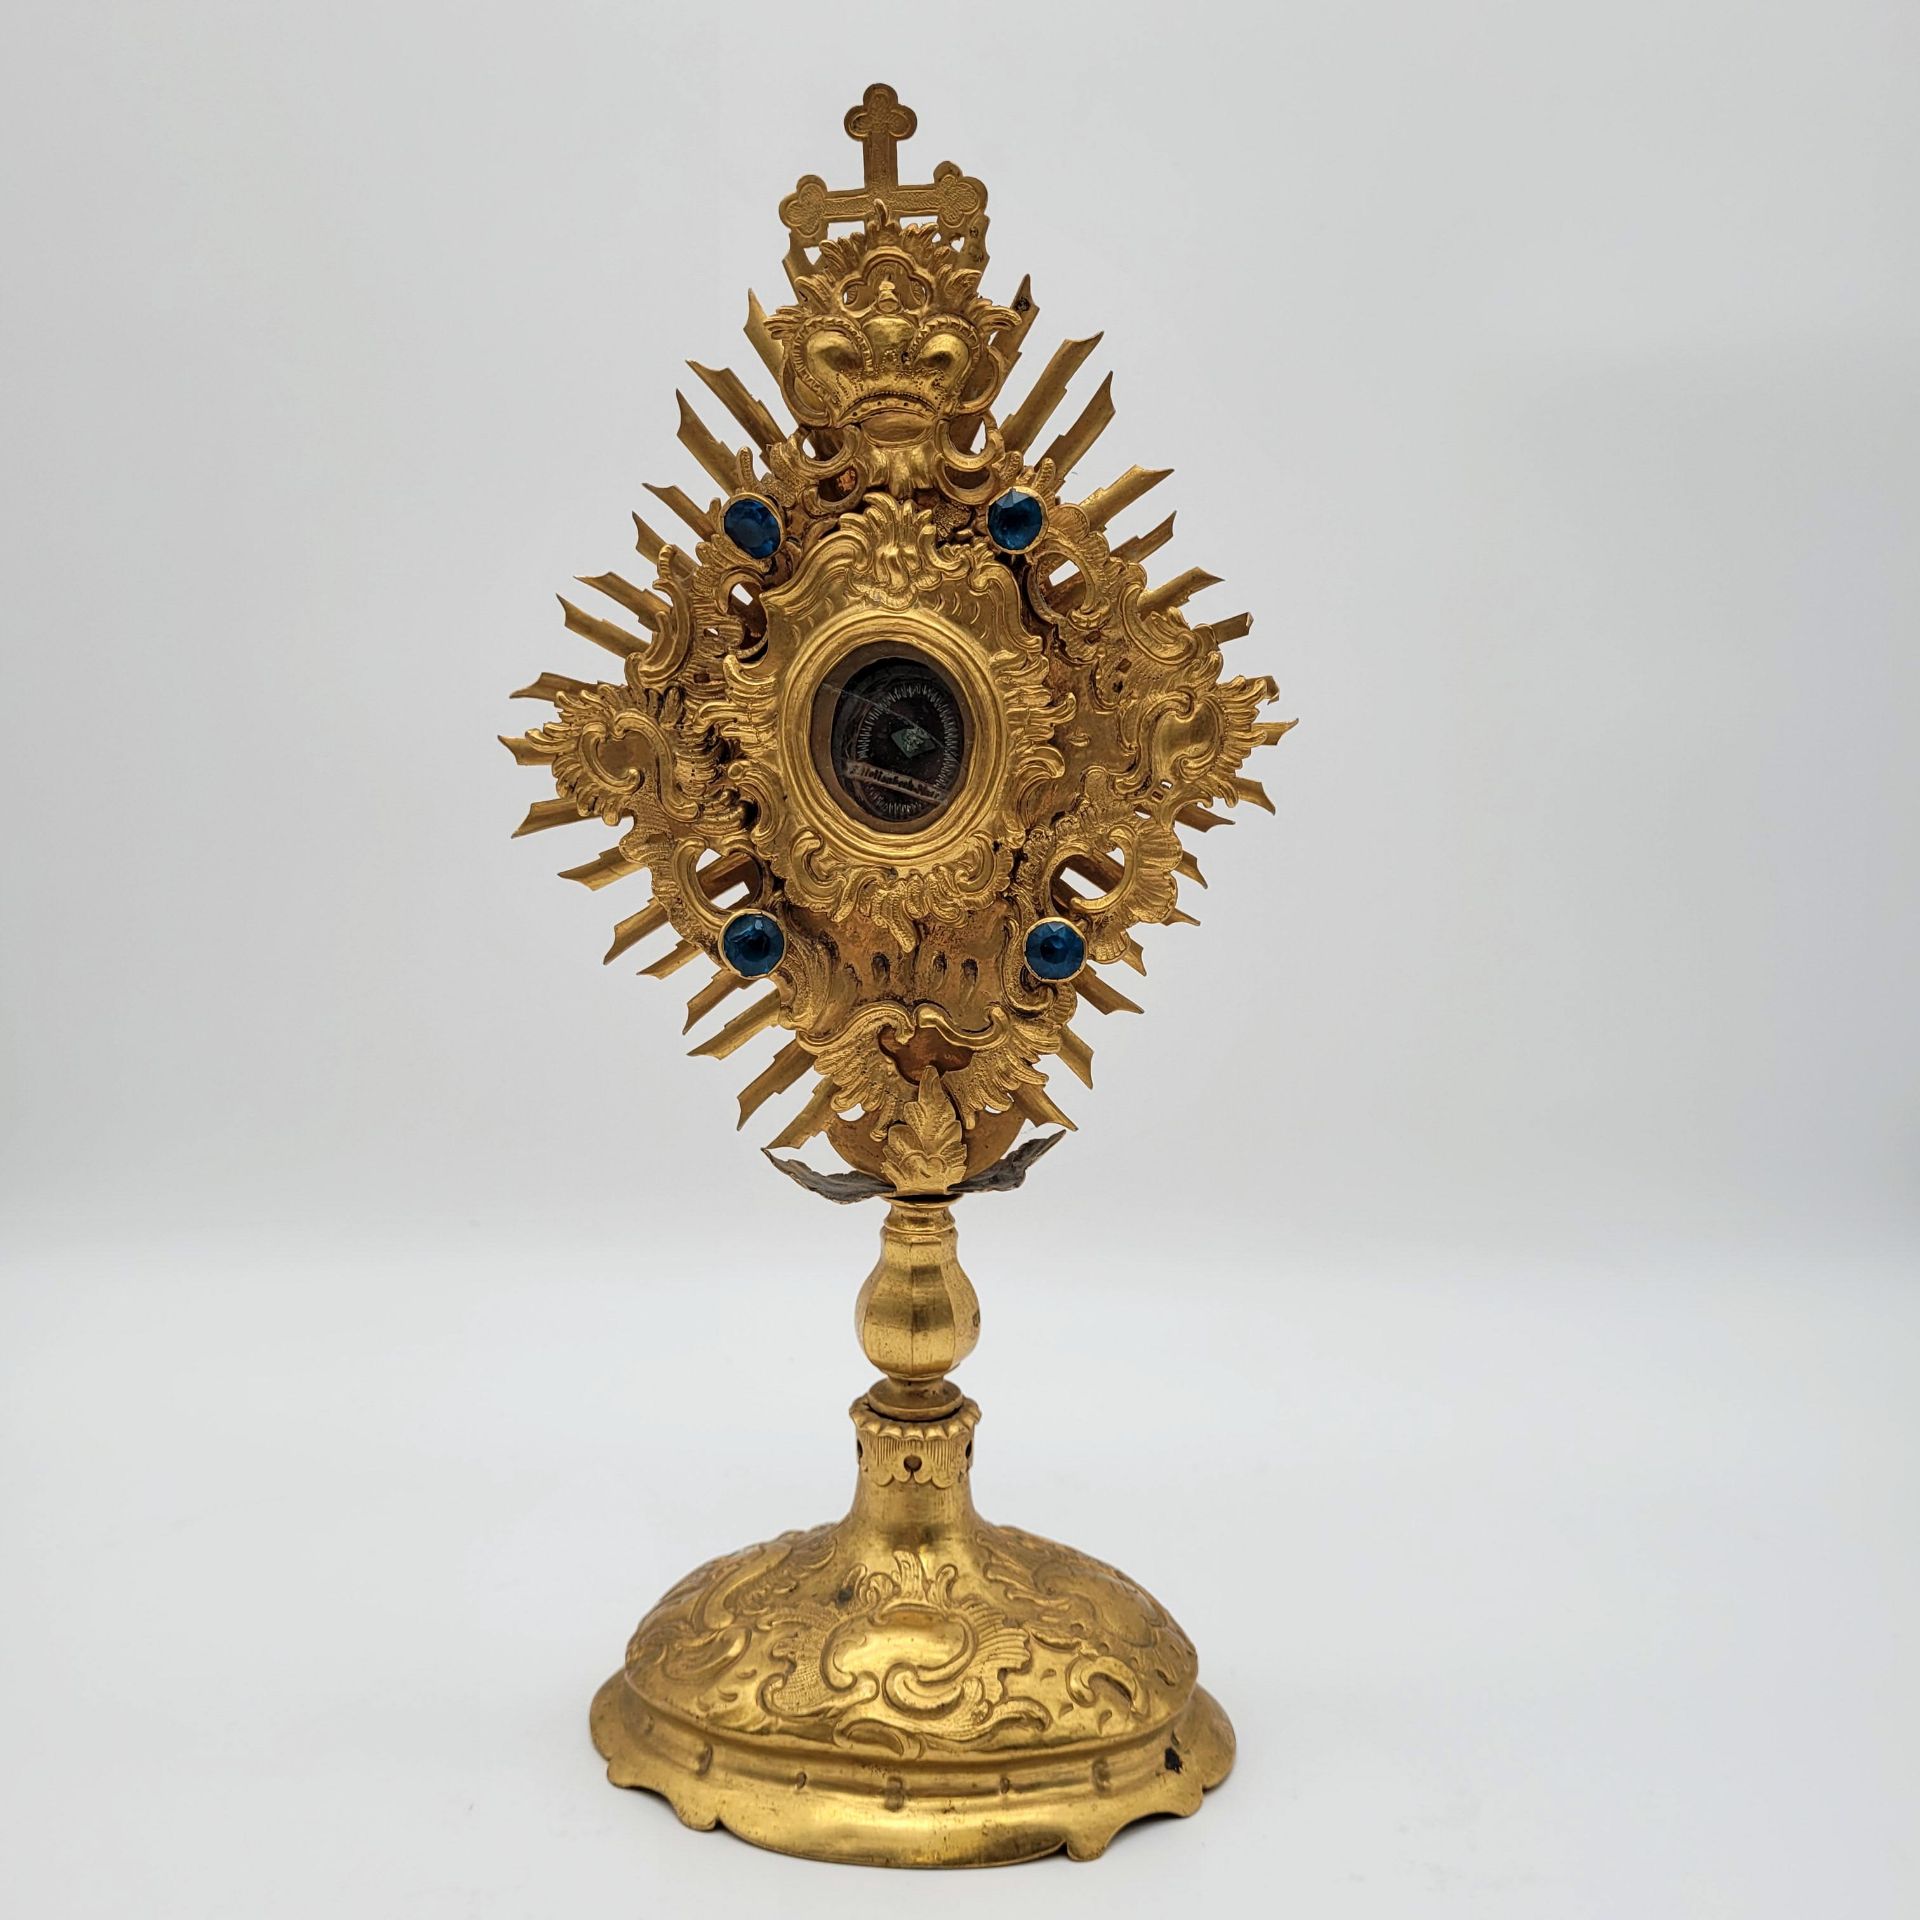 Monstranz mit Reliquie der Hl. Elisabeth, der Mutter Johannes des Täufers